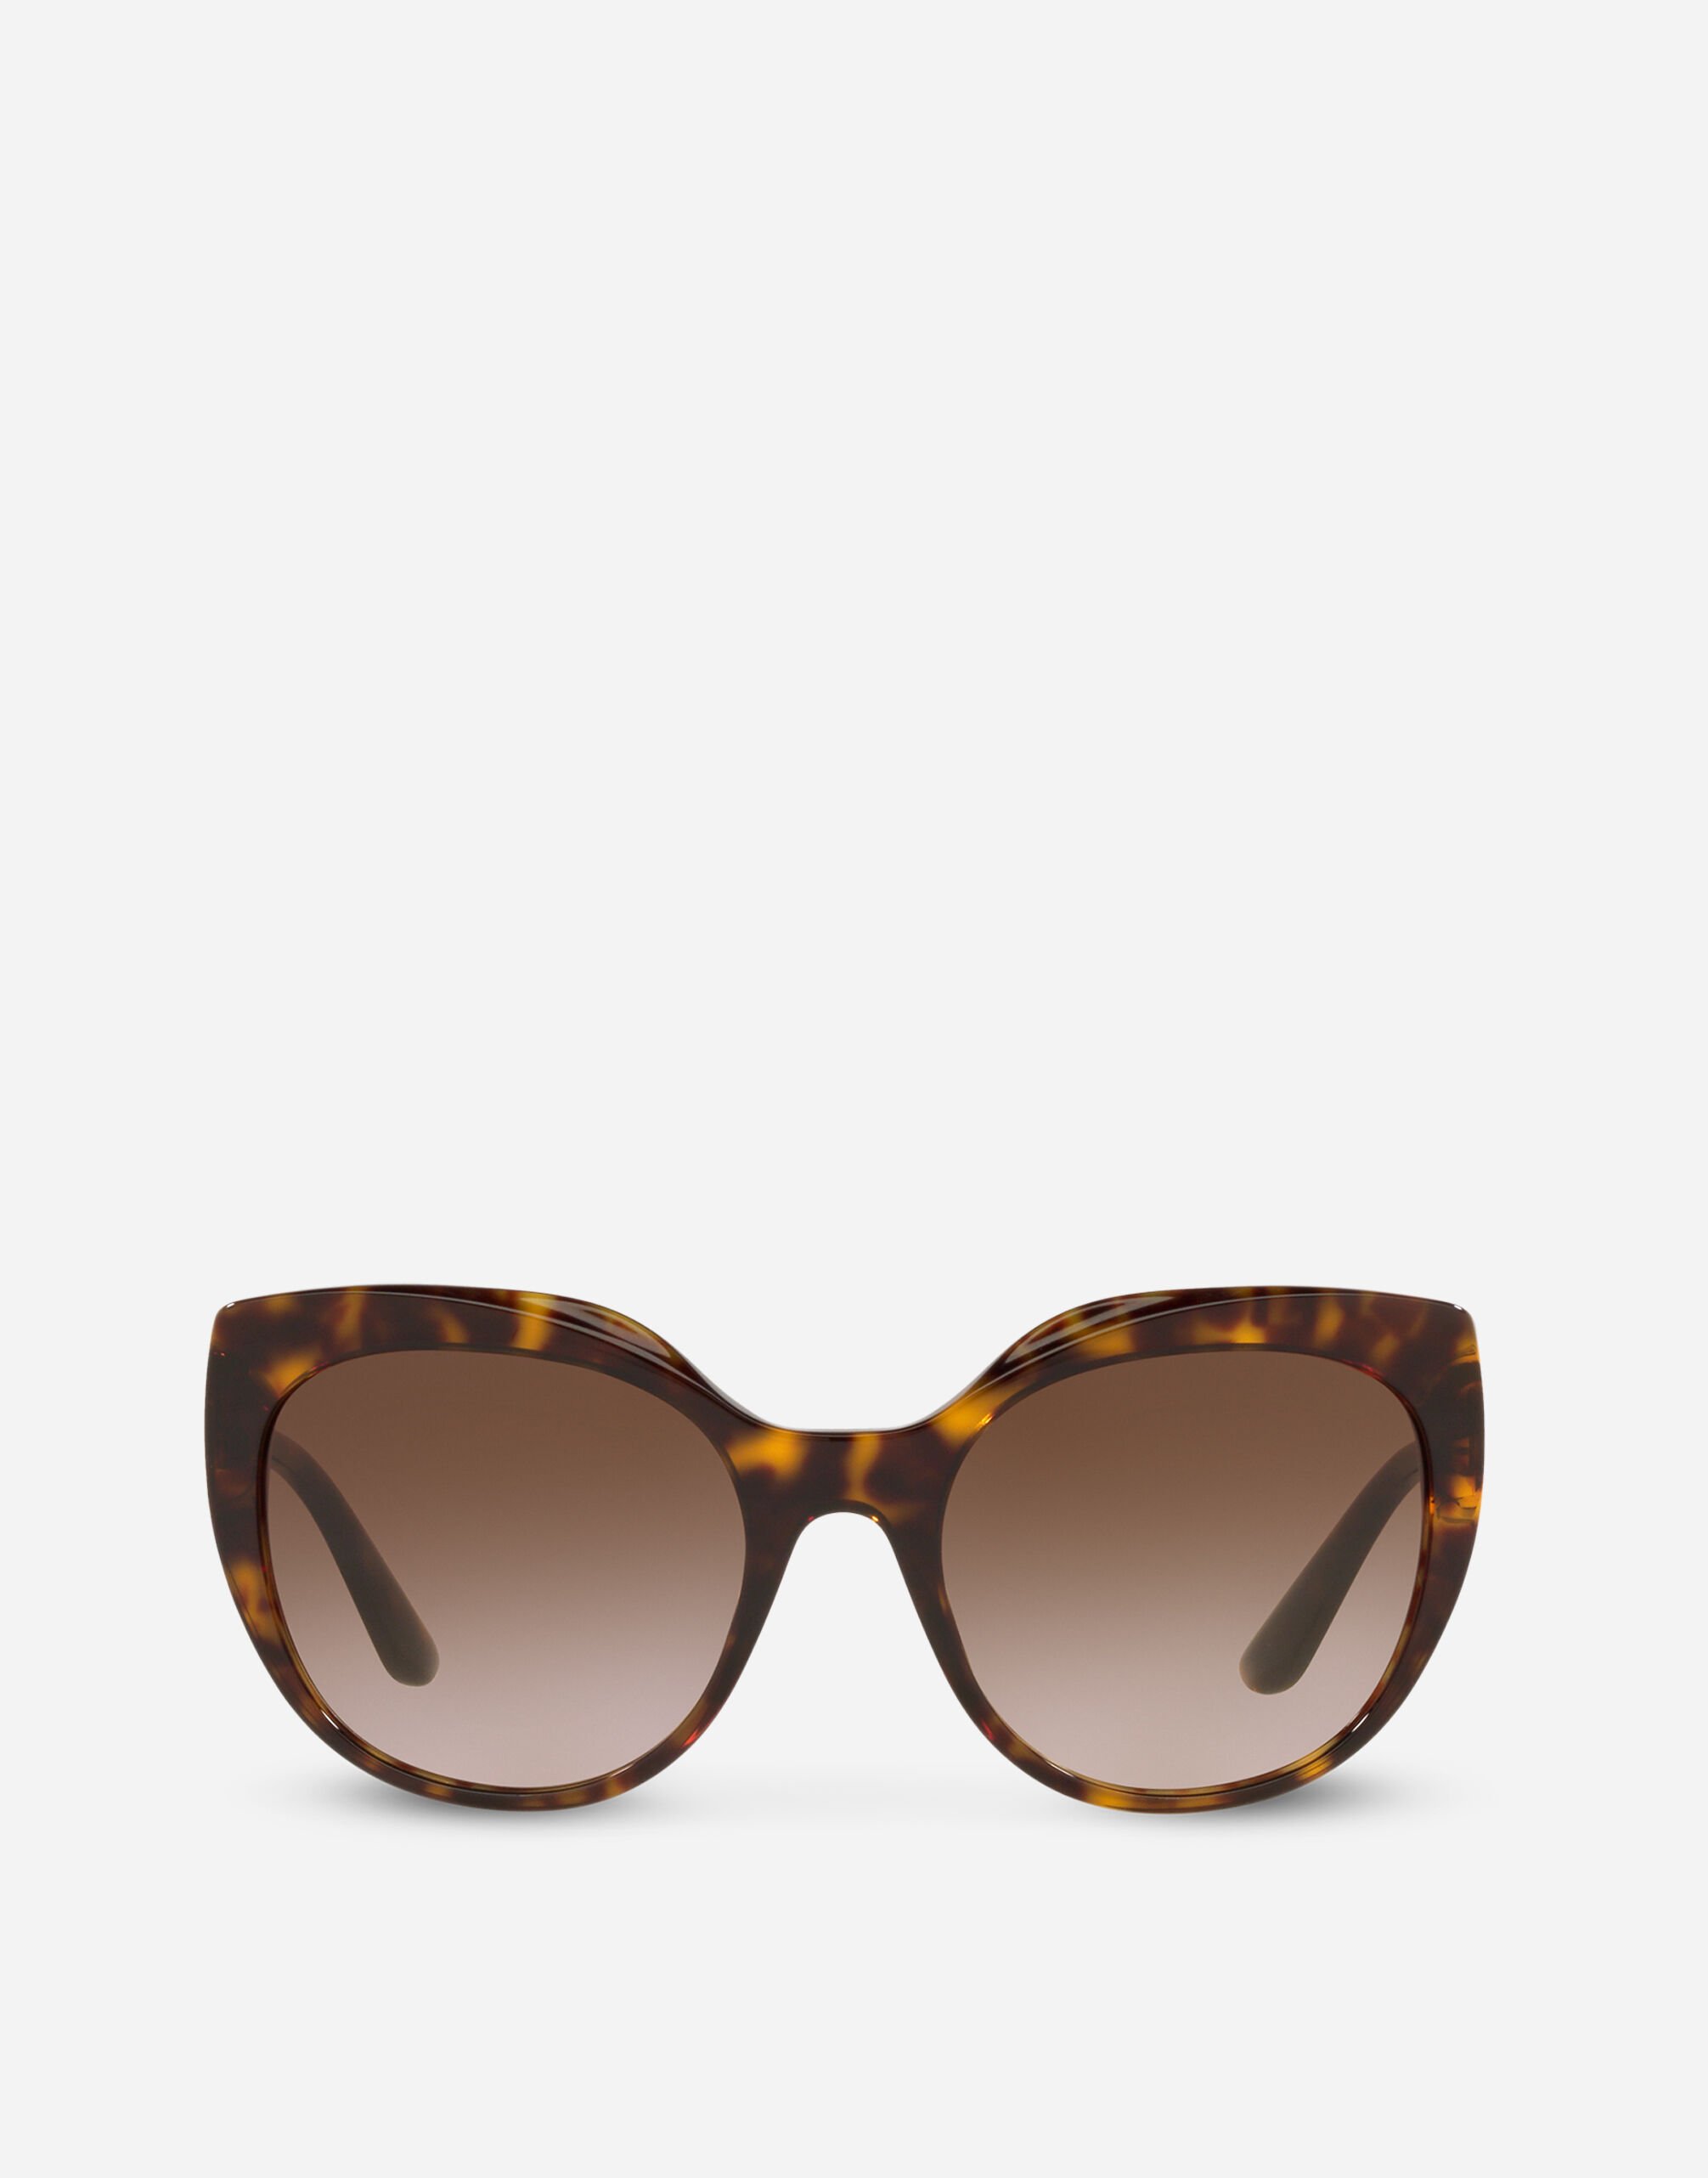 Dolce & Gabbana DG crossed sunglasses Black VG4439VP187